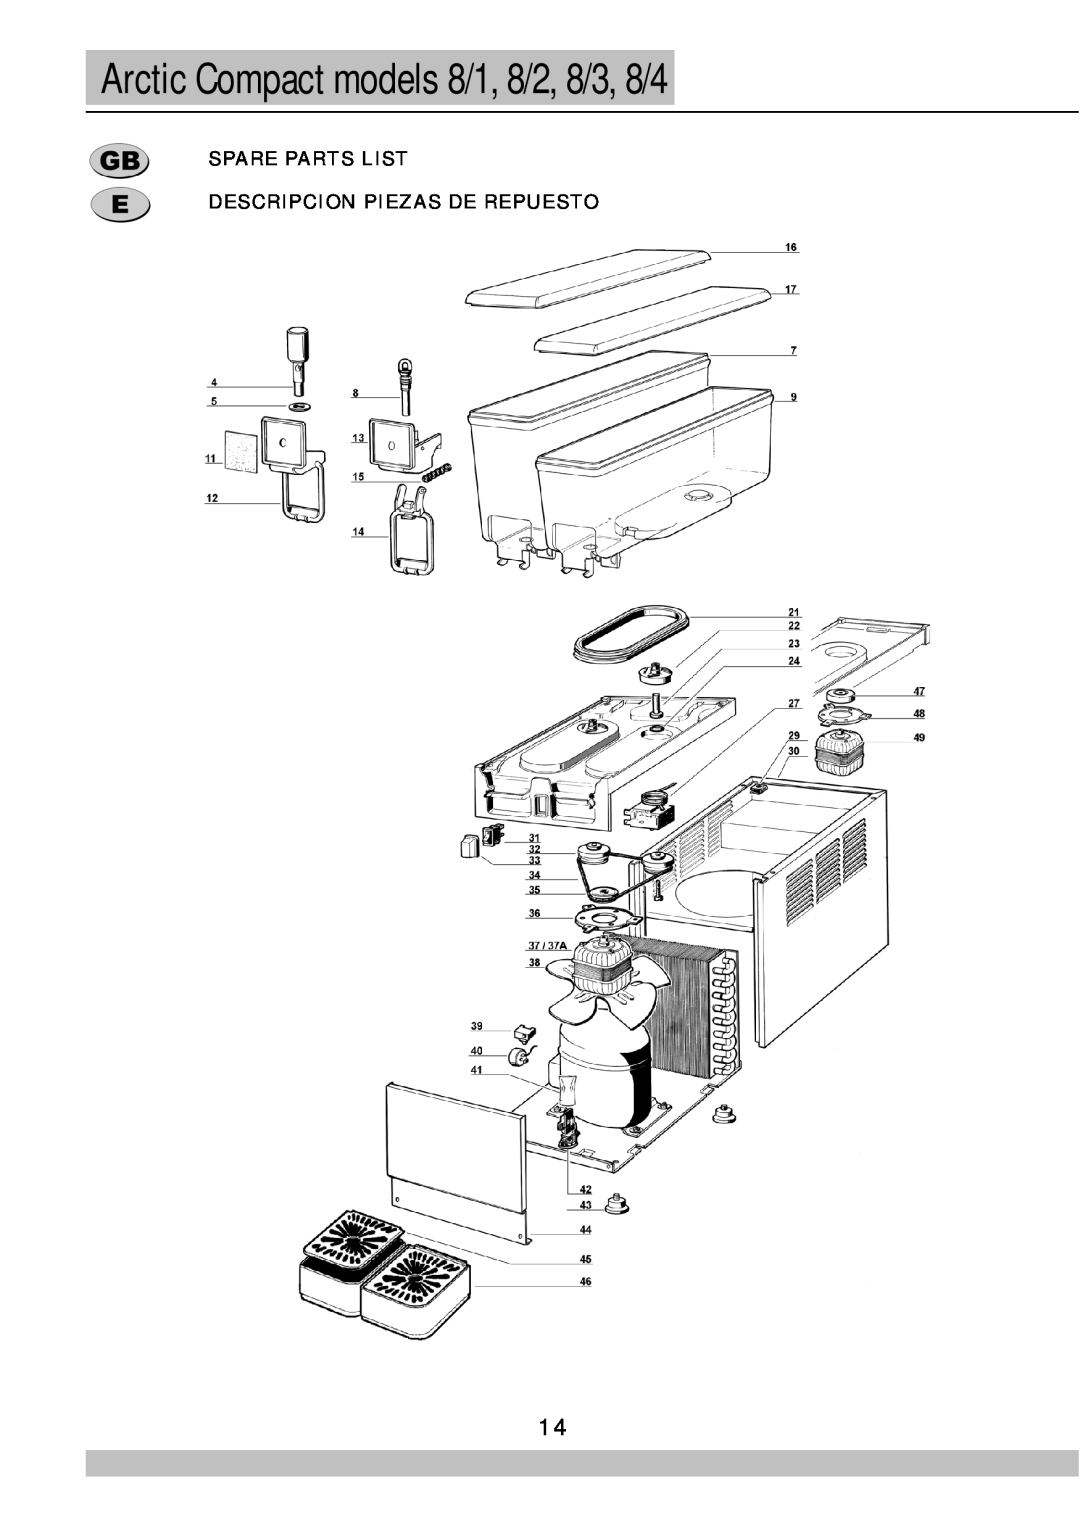 Cecilware manual Arctic Compact models 8/1, 8/2, 8/3, 8/4, Spare Parts List Descripcion Piezas De Repuesto 